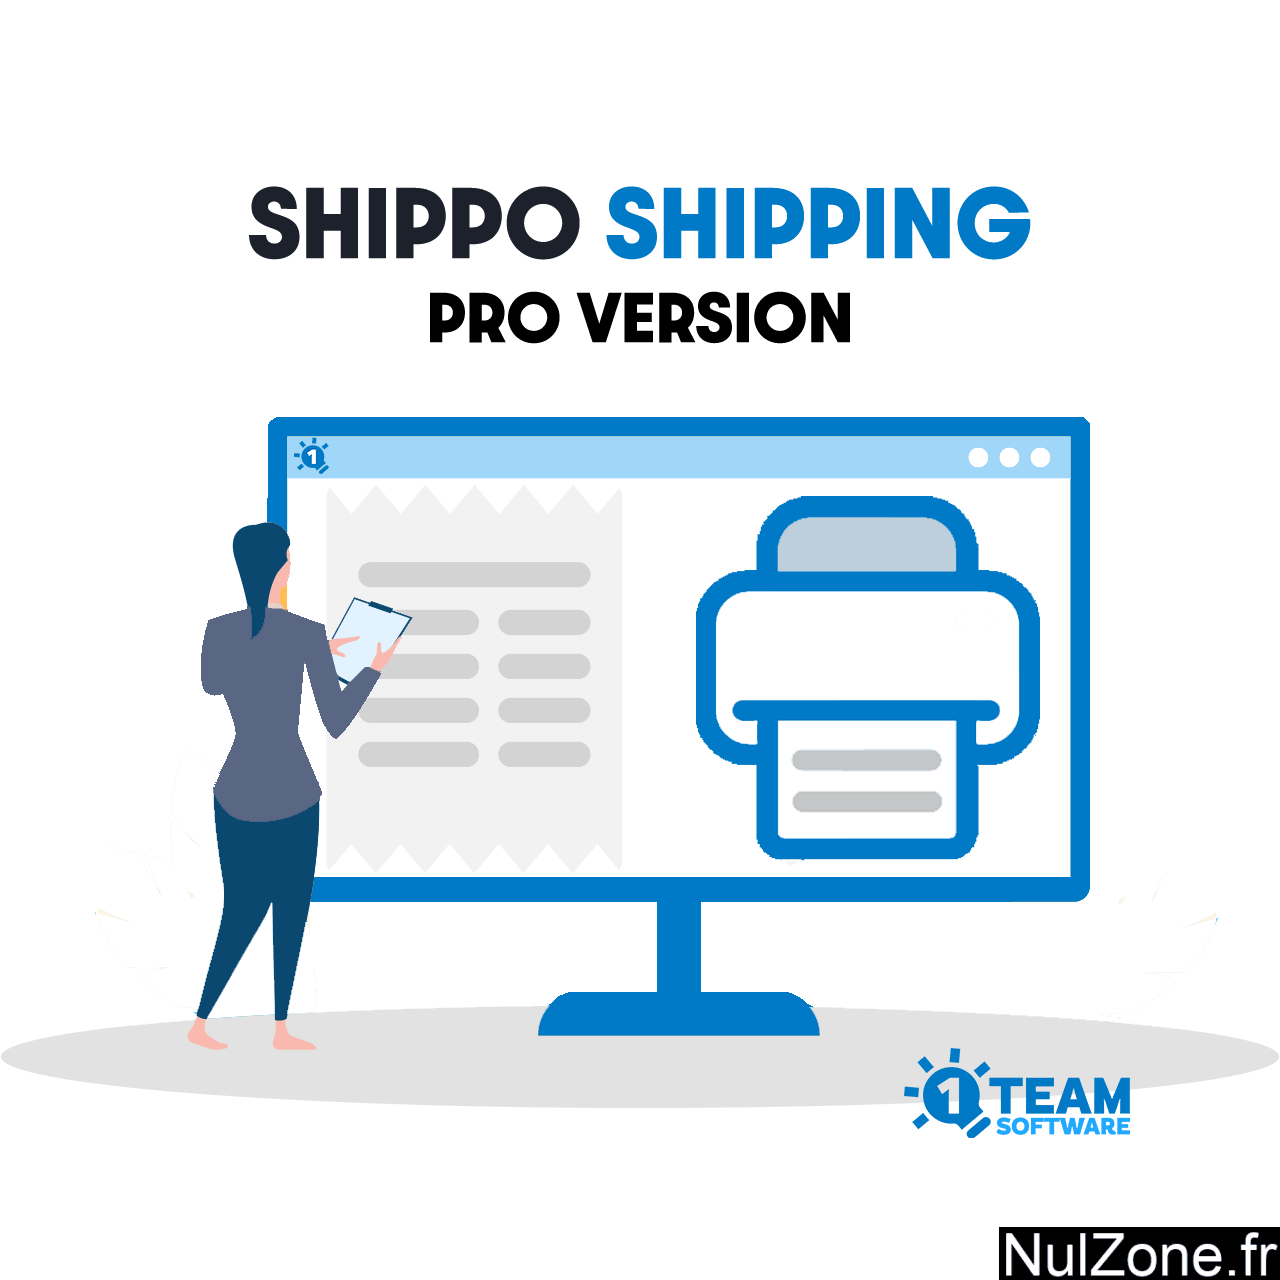 wc-shippo-shipping-shipping-pro.png